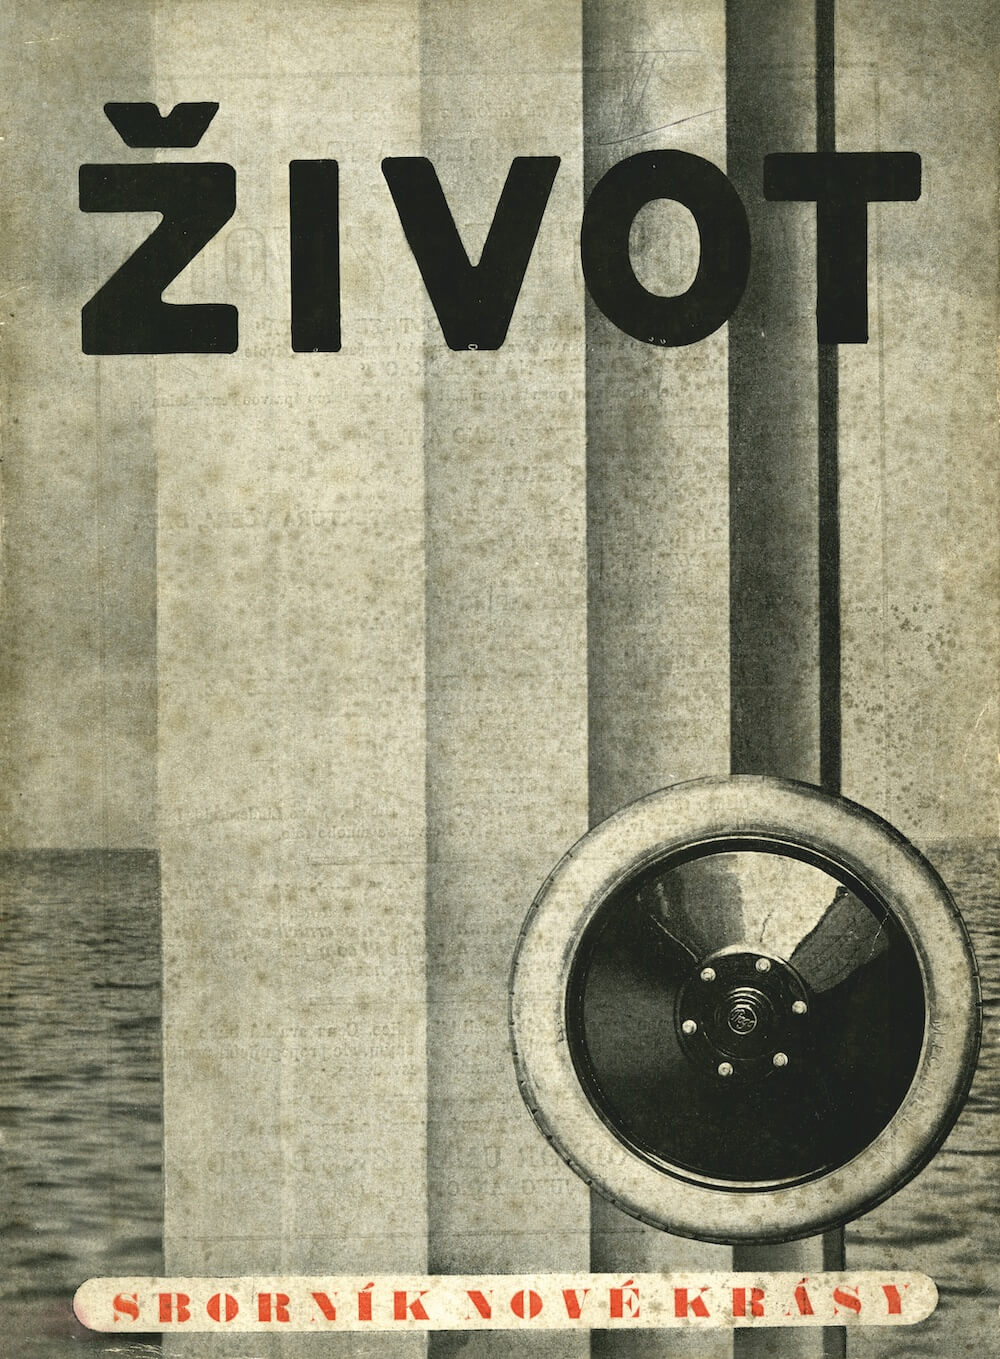 Bedřich Feuerstein, Jaromír Krejcar, Josef Šíma, Karel Teige (obálka / Umschlag) – Život II. Sborník nové krásy, 1922.